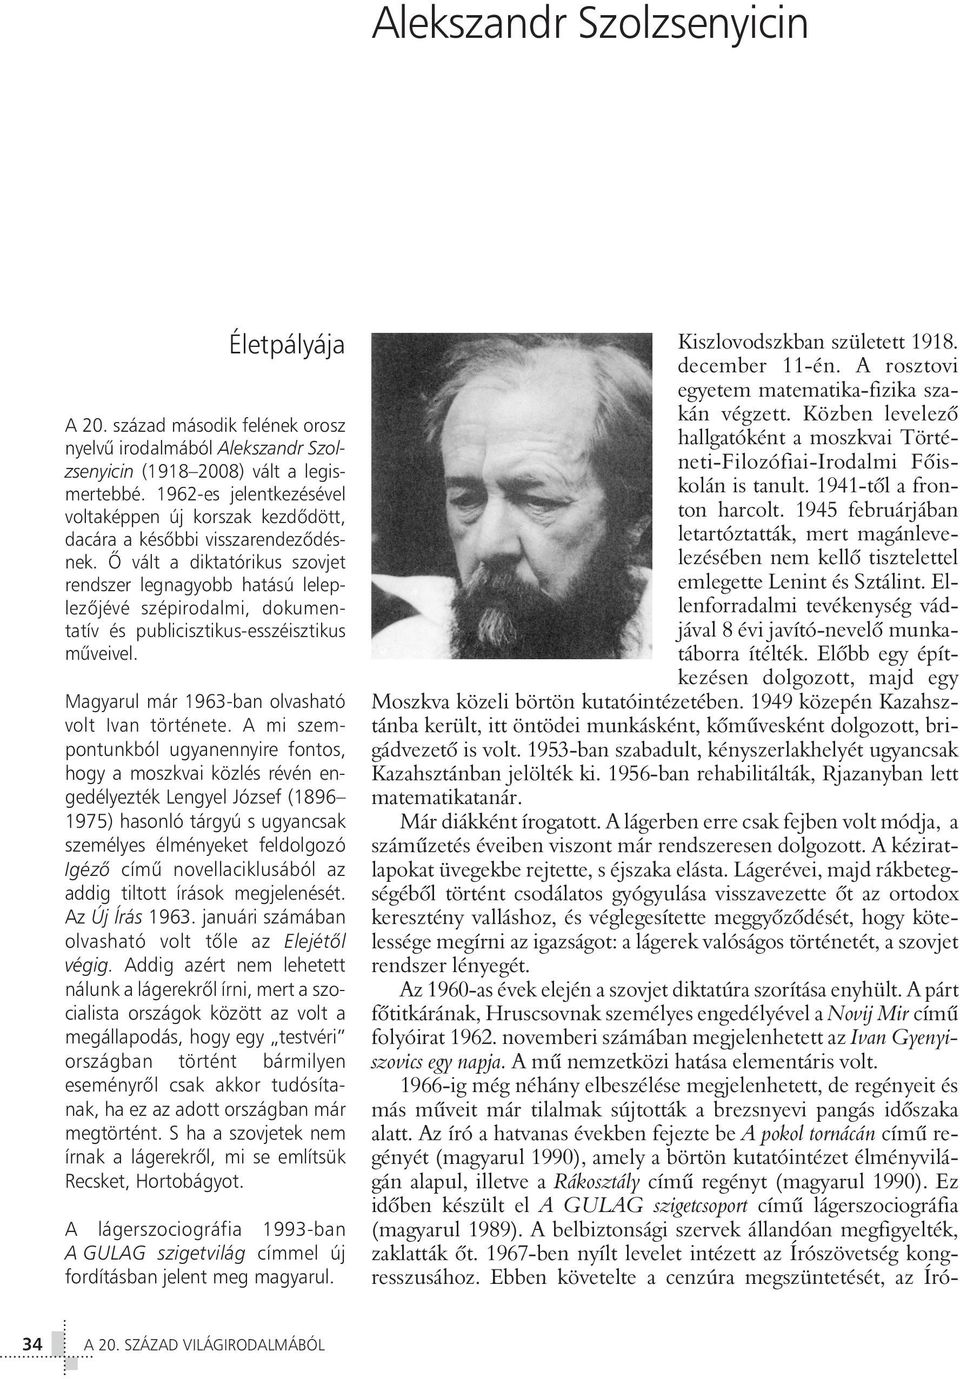 Õ vált a diktatórikus szovjet rendszer legnagyobb hatású leleplezõjévé szépirodalmi, dokumentatív és publicisztikus-esszéisztikus mûveivel. Magyarul már 1963-ban olvasható volt Ivan története.